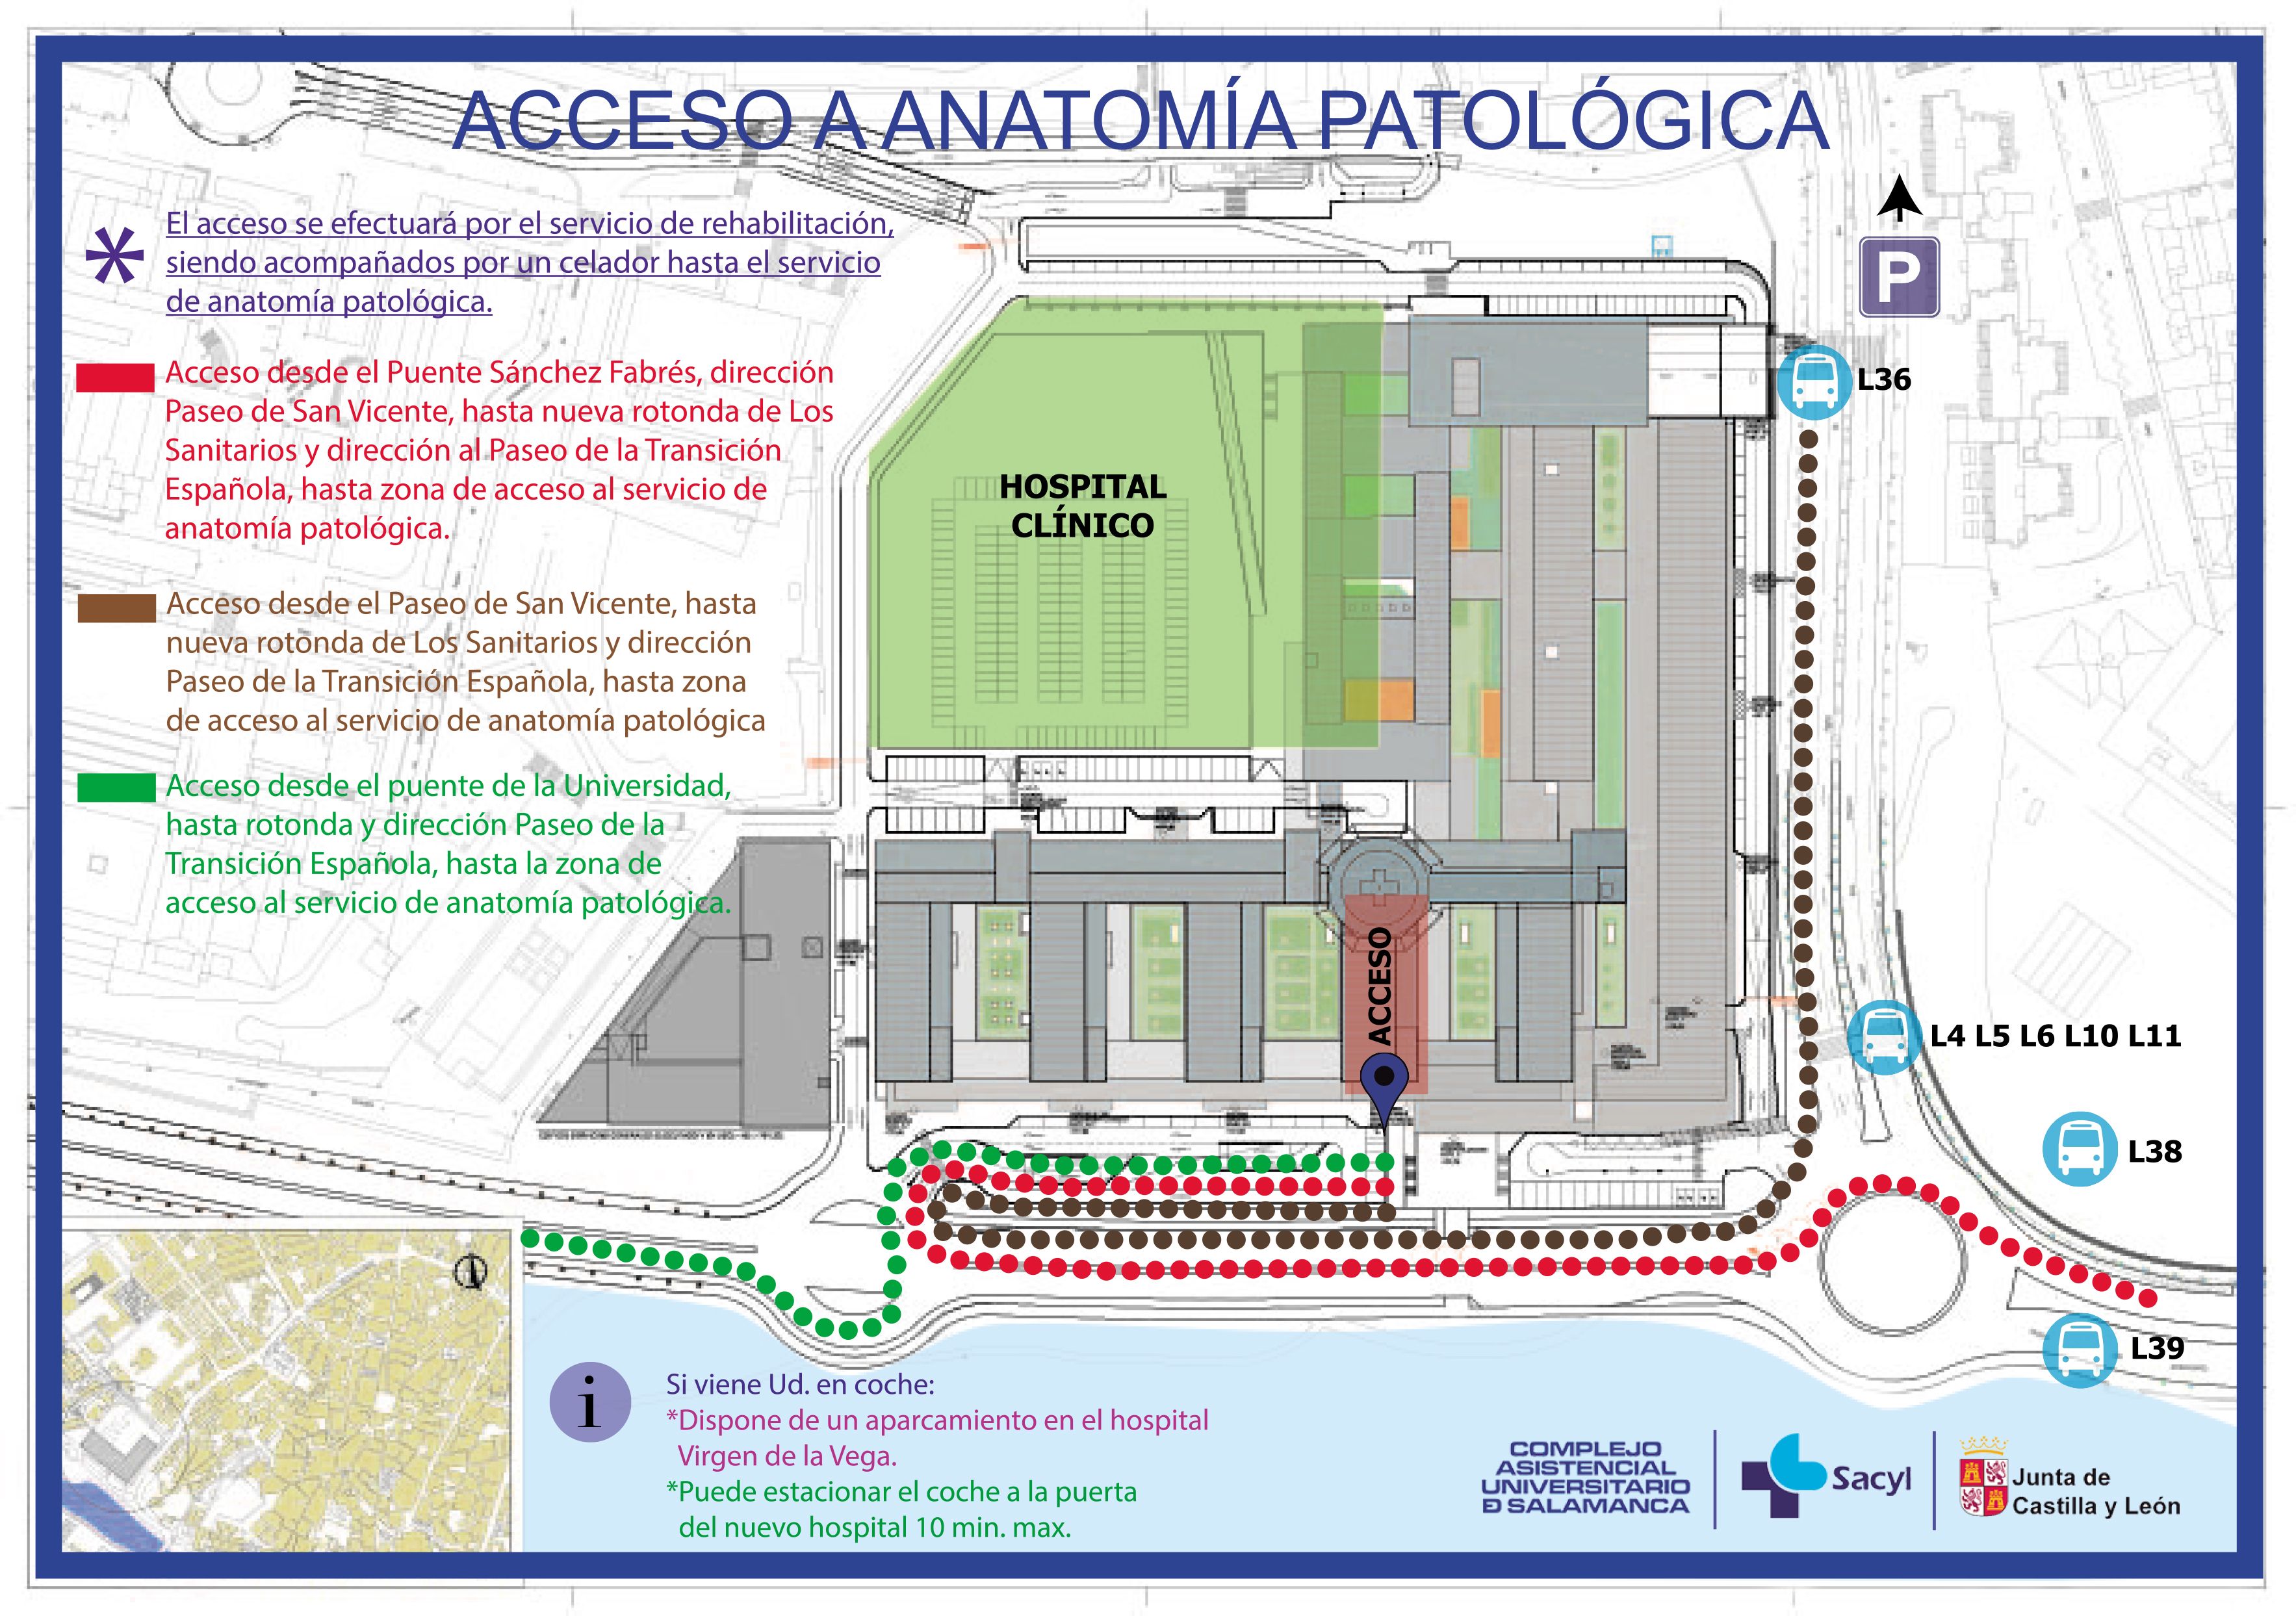 acceso usuarios anatomia patologica nuevo hospital